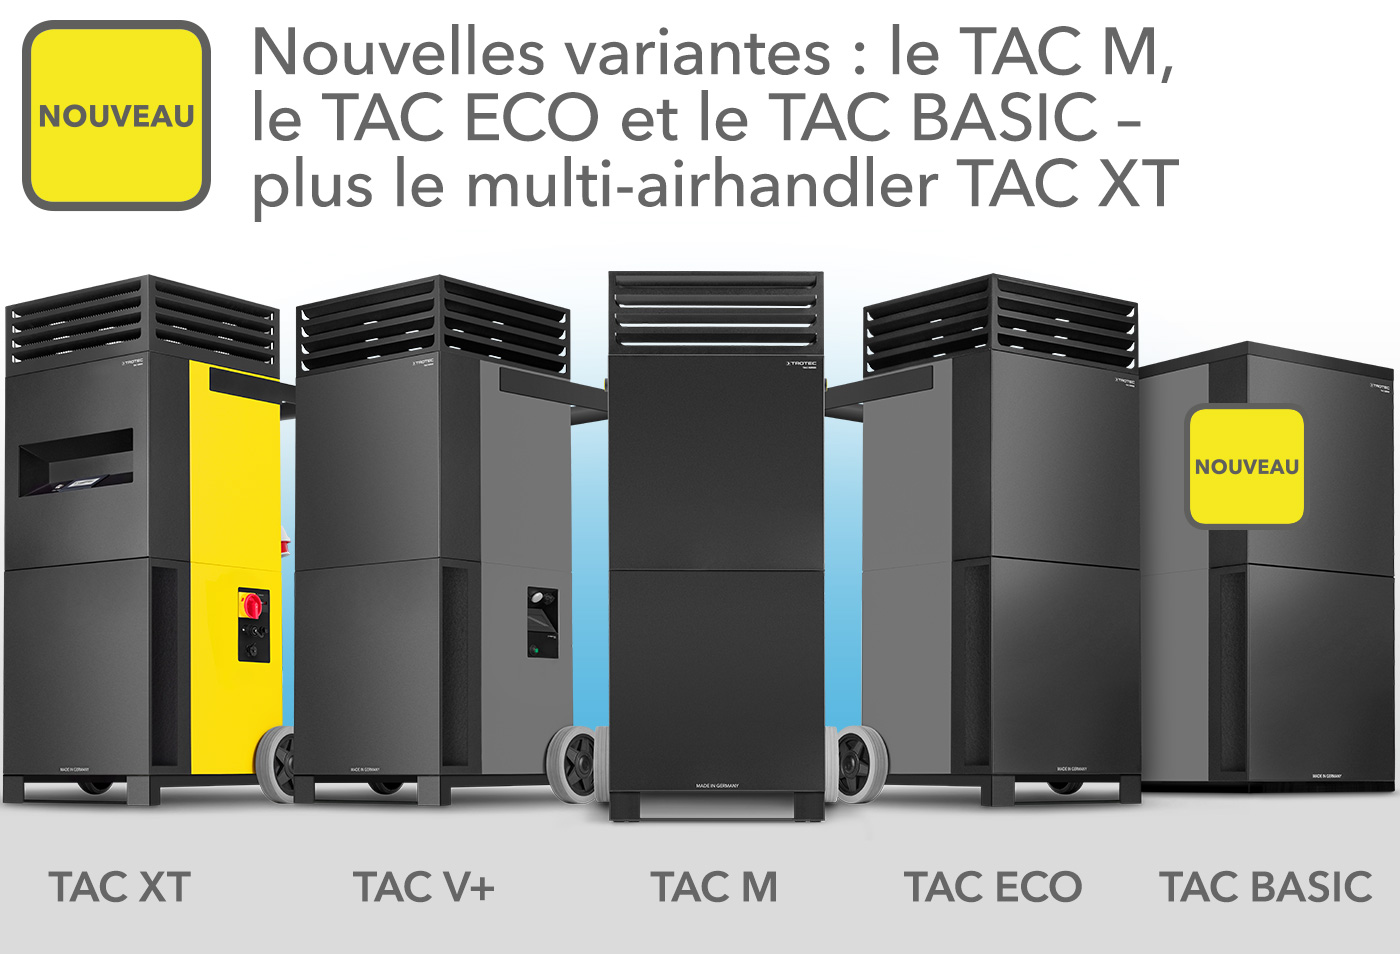 Les variantes TAC M, TAC ECO et TAC BASIC